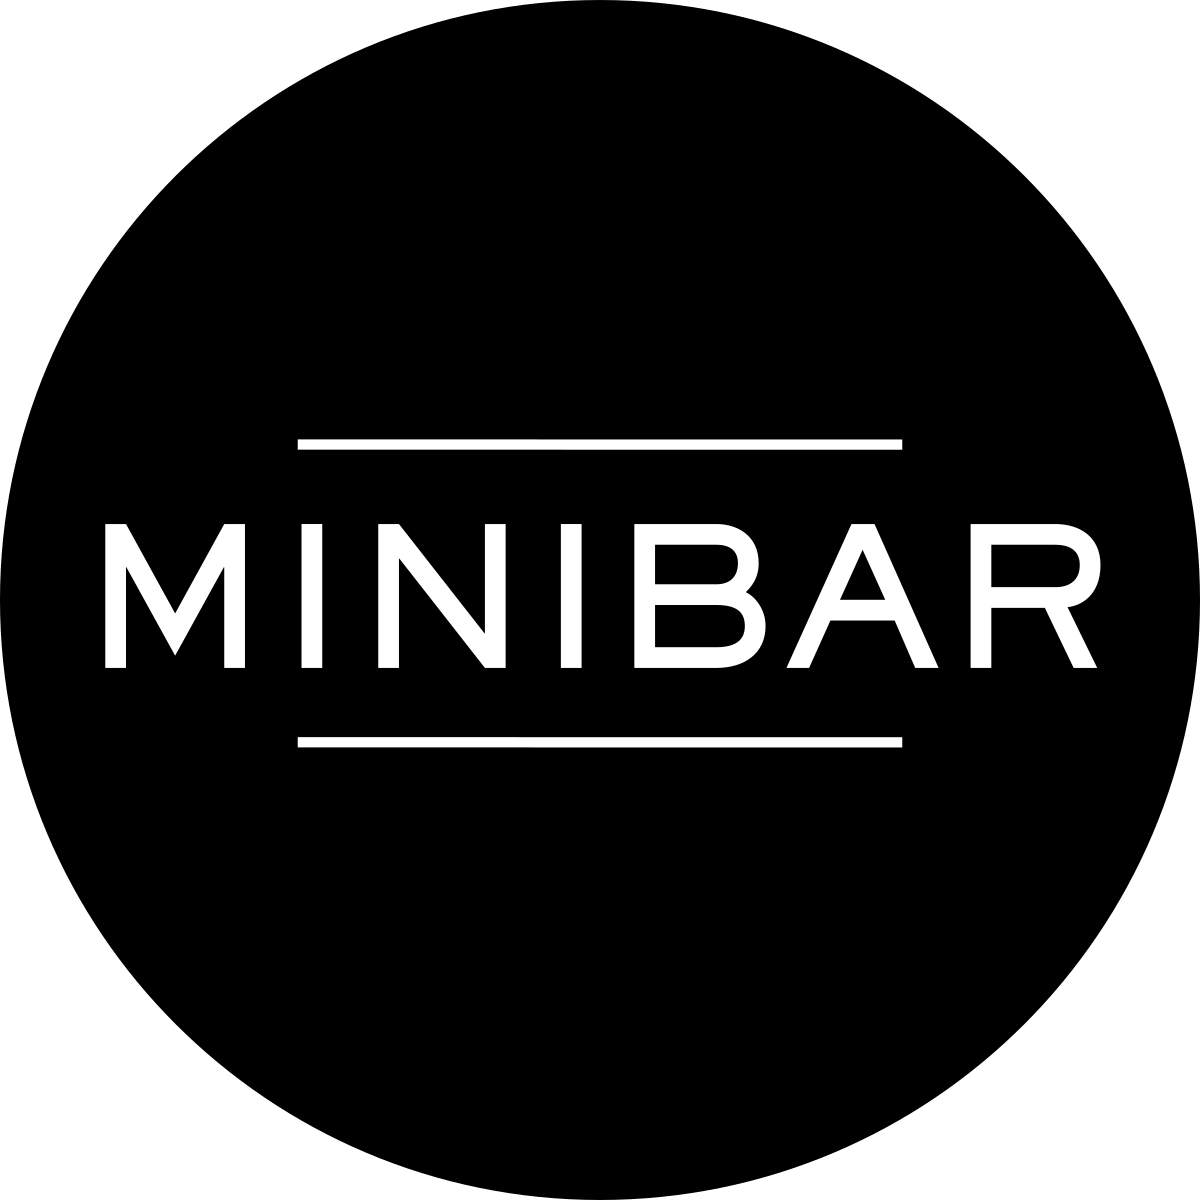 Minibar - Wikipedia